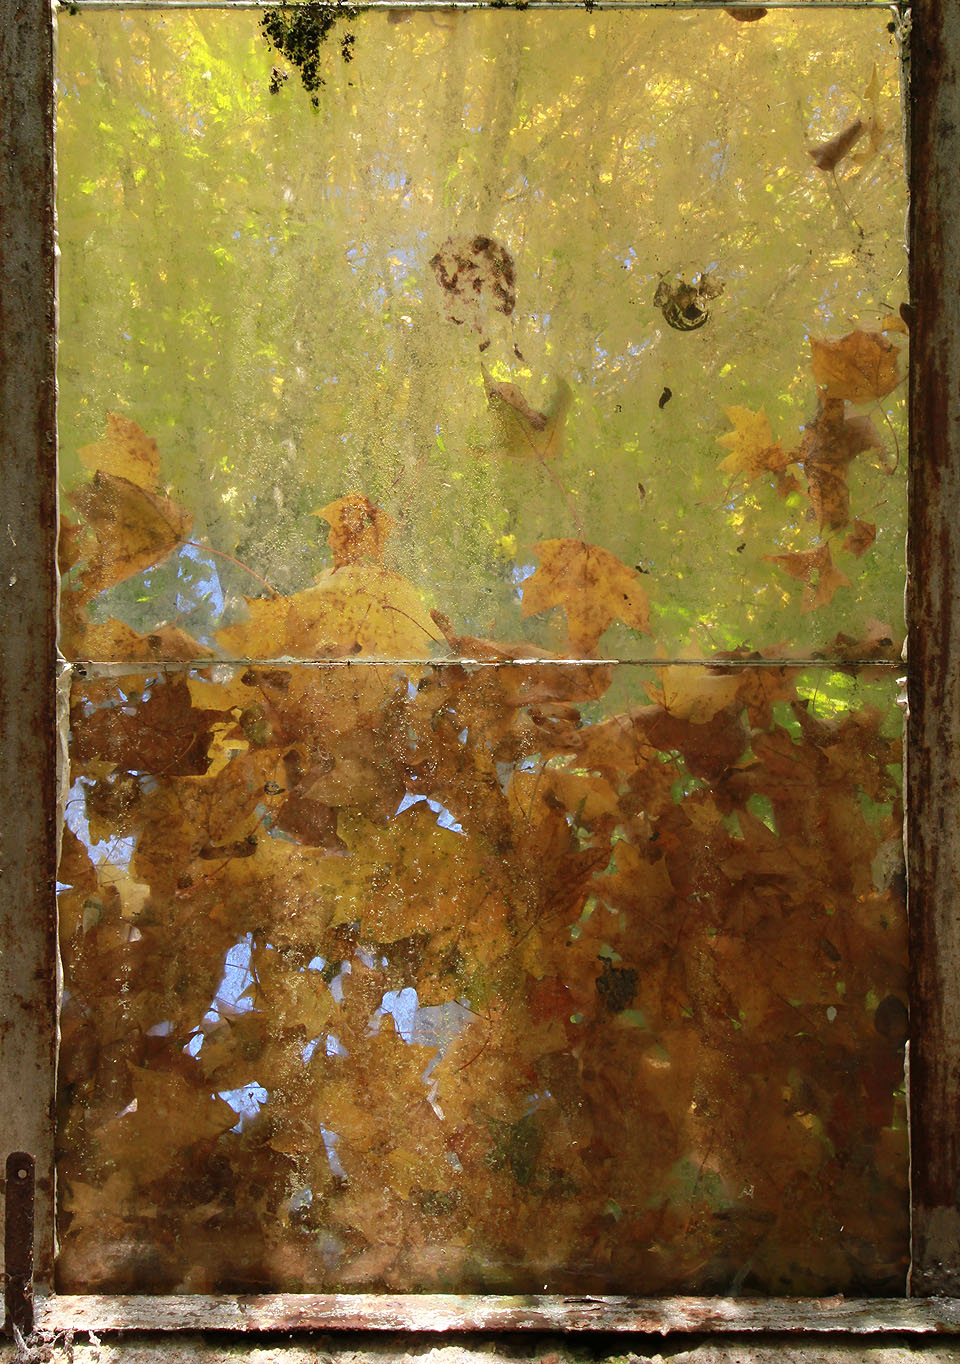 Některé ze skleněných tabulek skleníků už zapadaly listím natolik, že přes ně sotva porchází světlo.